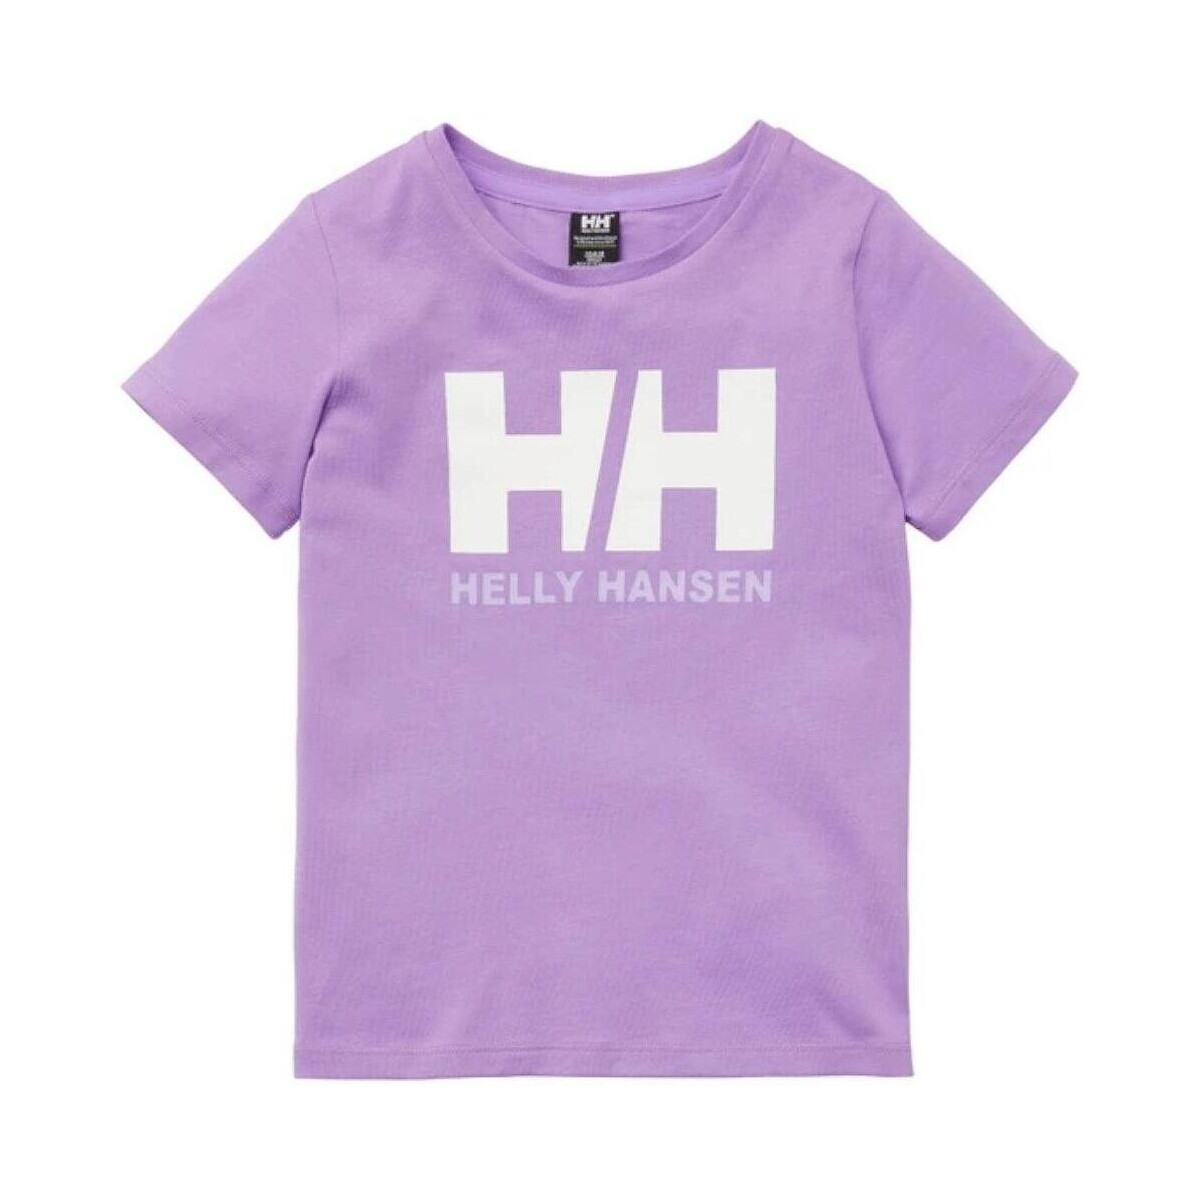 tekstylia Dziewczynka T-shirty z krótkim rękawem Helly Hansen  Fioletowy